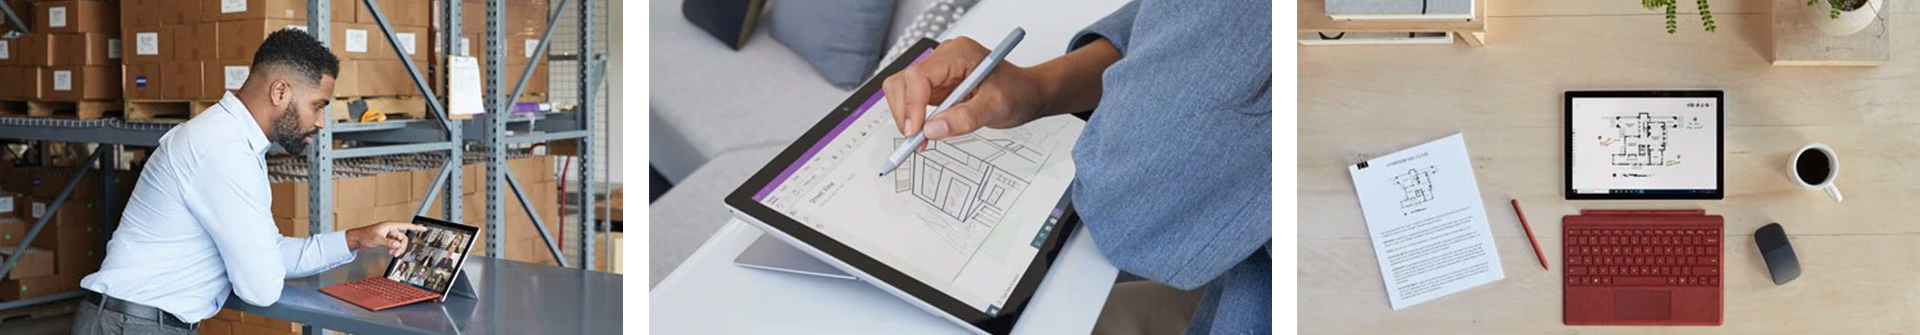 Surface Pro 7 Plus - віртуальні зустрічі оживають